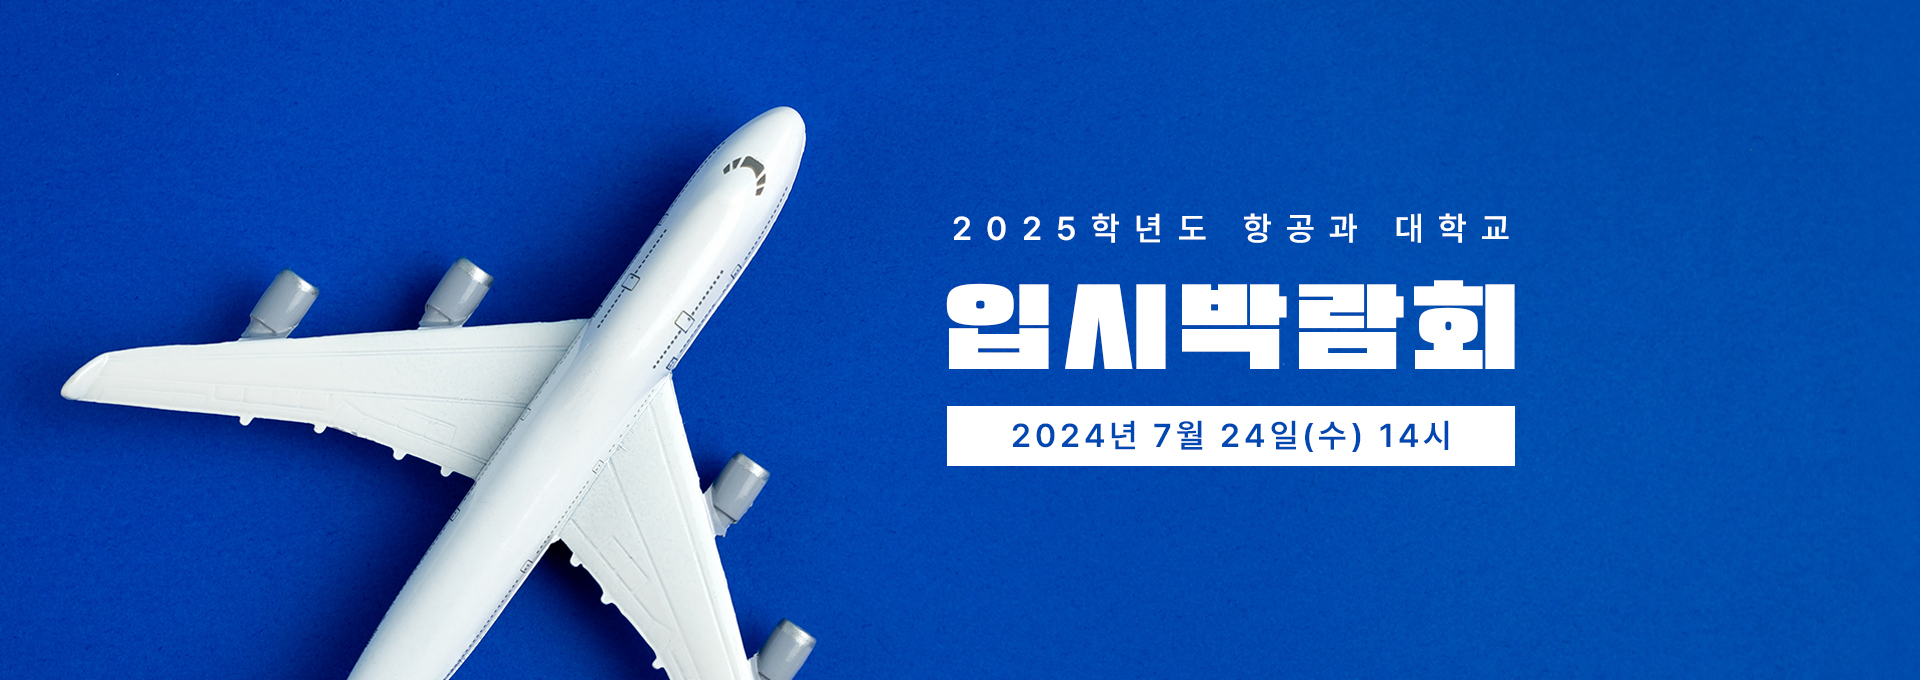 2025학년도 항공과 입시박람회